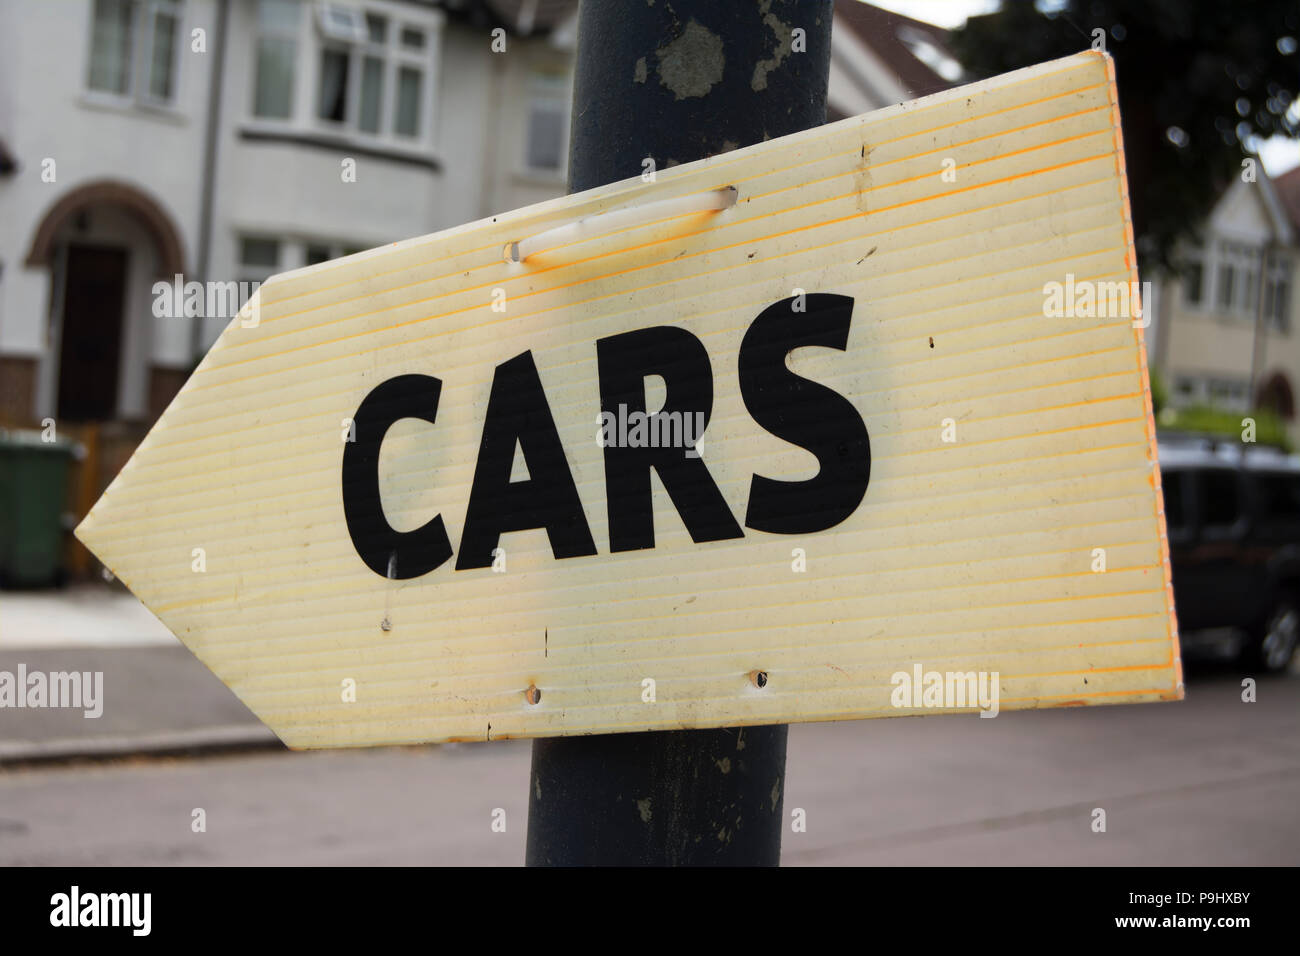 Segno di freccia indicante le vetture, in east twickenham, midlsex, Inghilterra, presumibilmente indicando le direzioni ad un rivenditore di auto Foto Stock